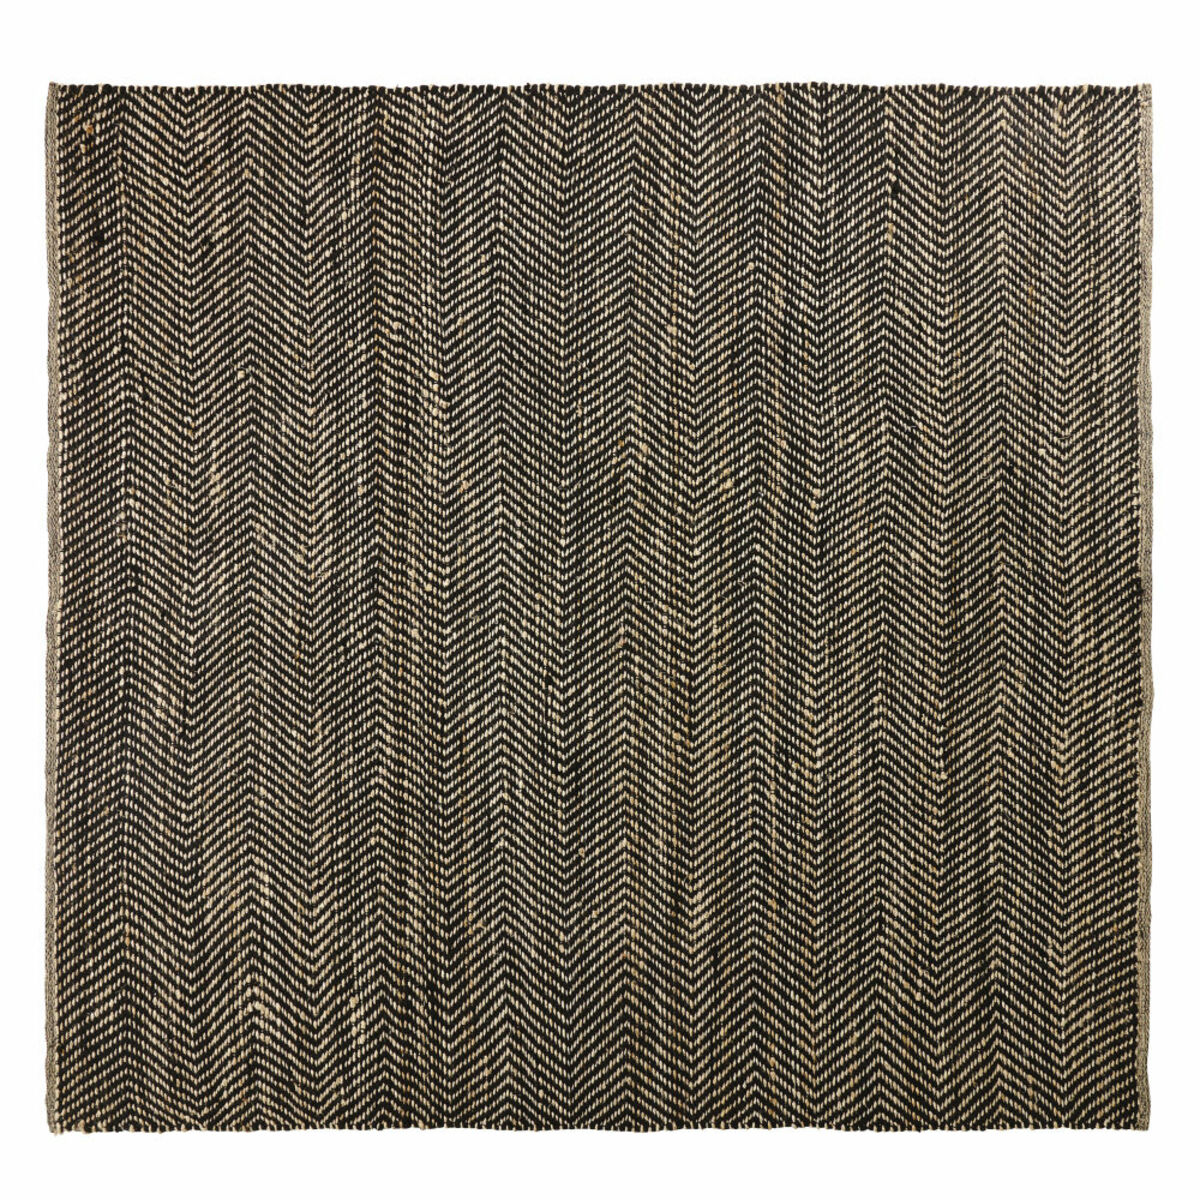 Tapis en coton et jute noir et marron motifs à chevrons 200x200